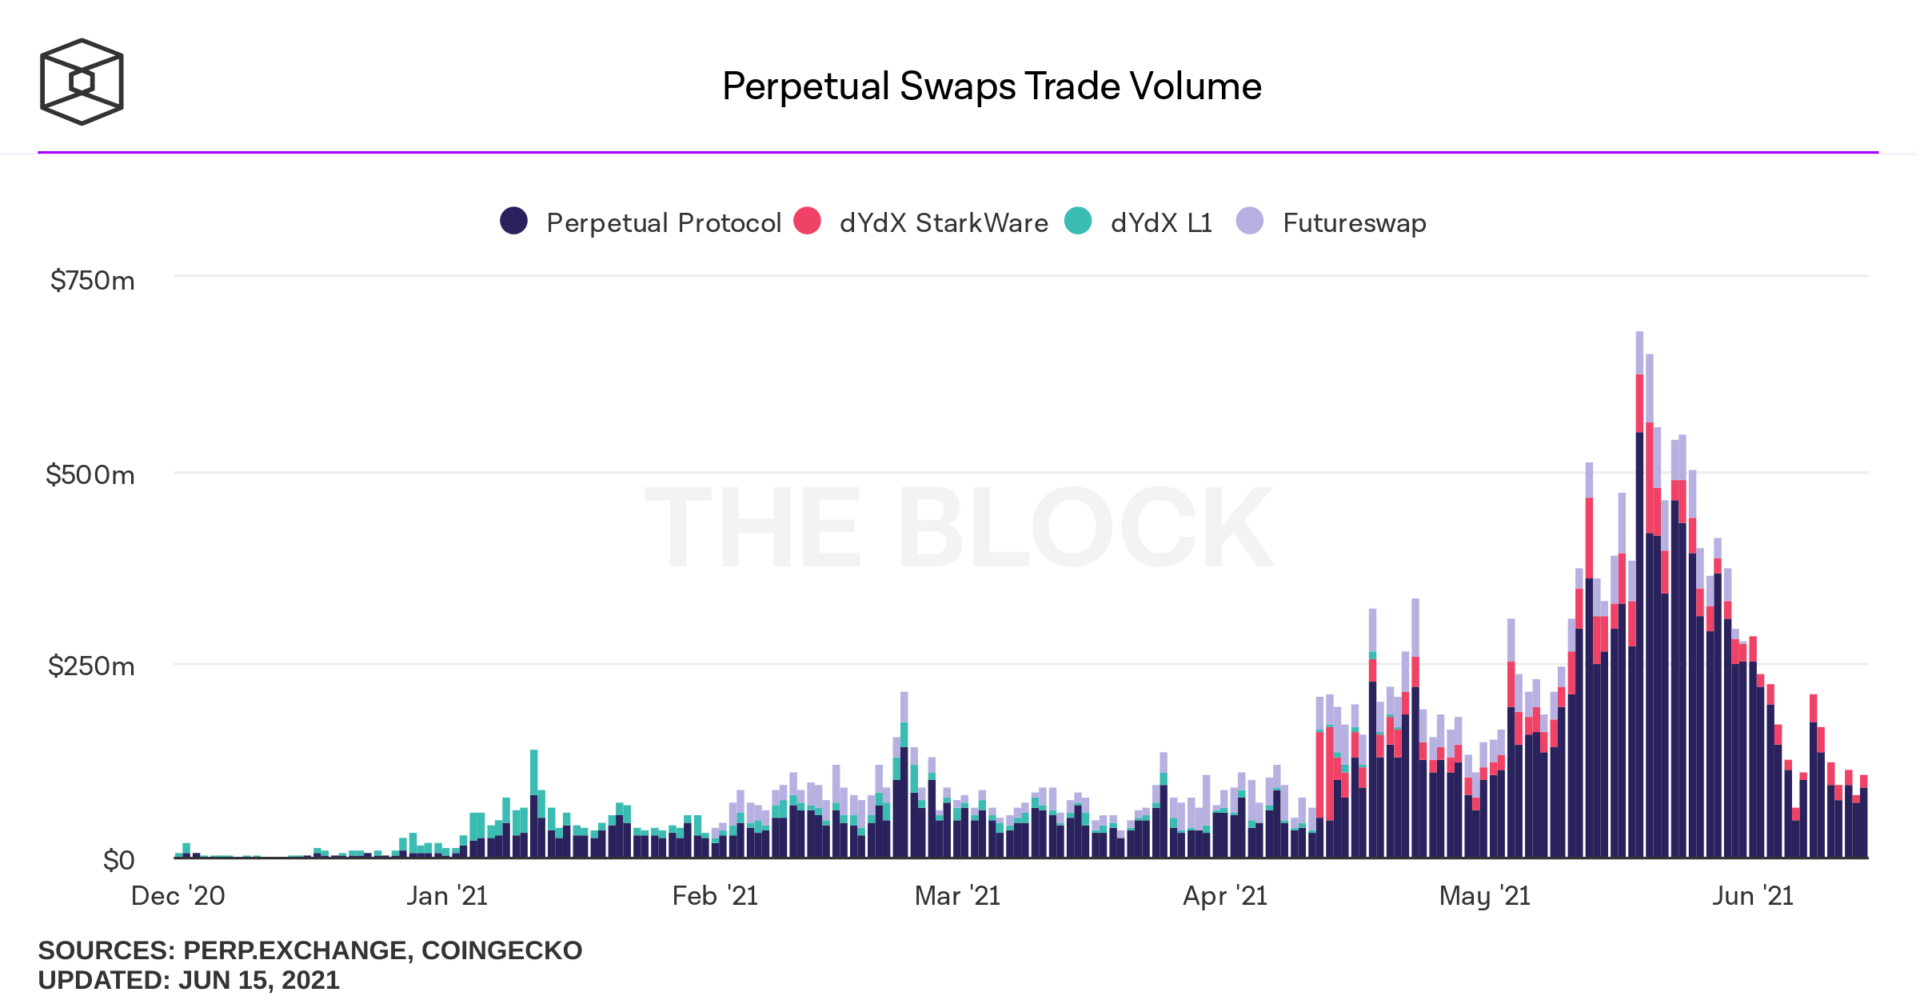 Volumes négocié sur les swaps perpétuels en milliards de dollars, avec la plateforme dXdY affichant le second plus haut volume de ce marché